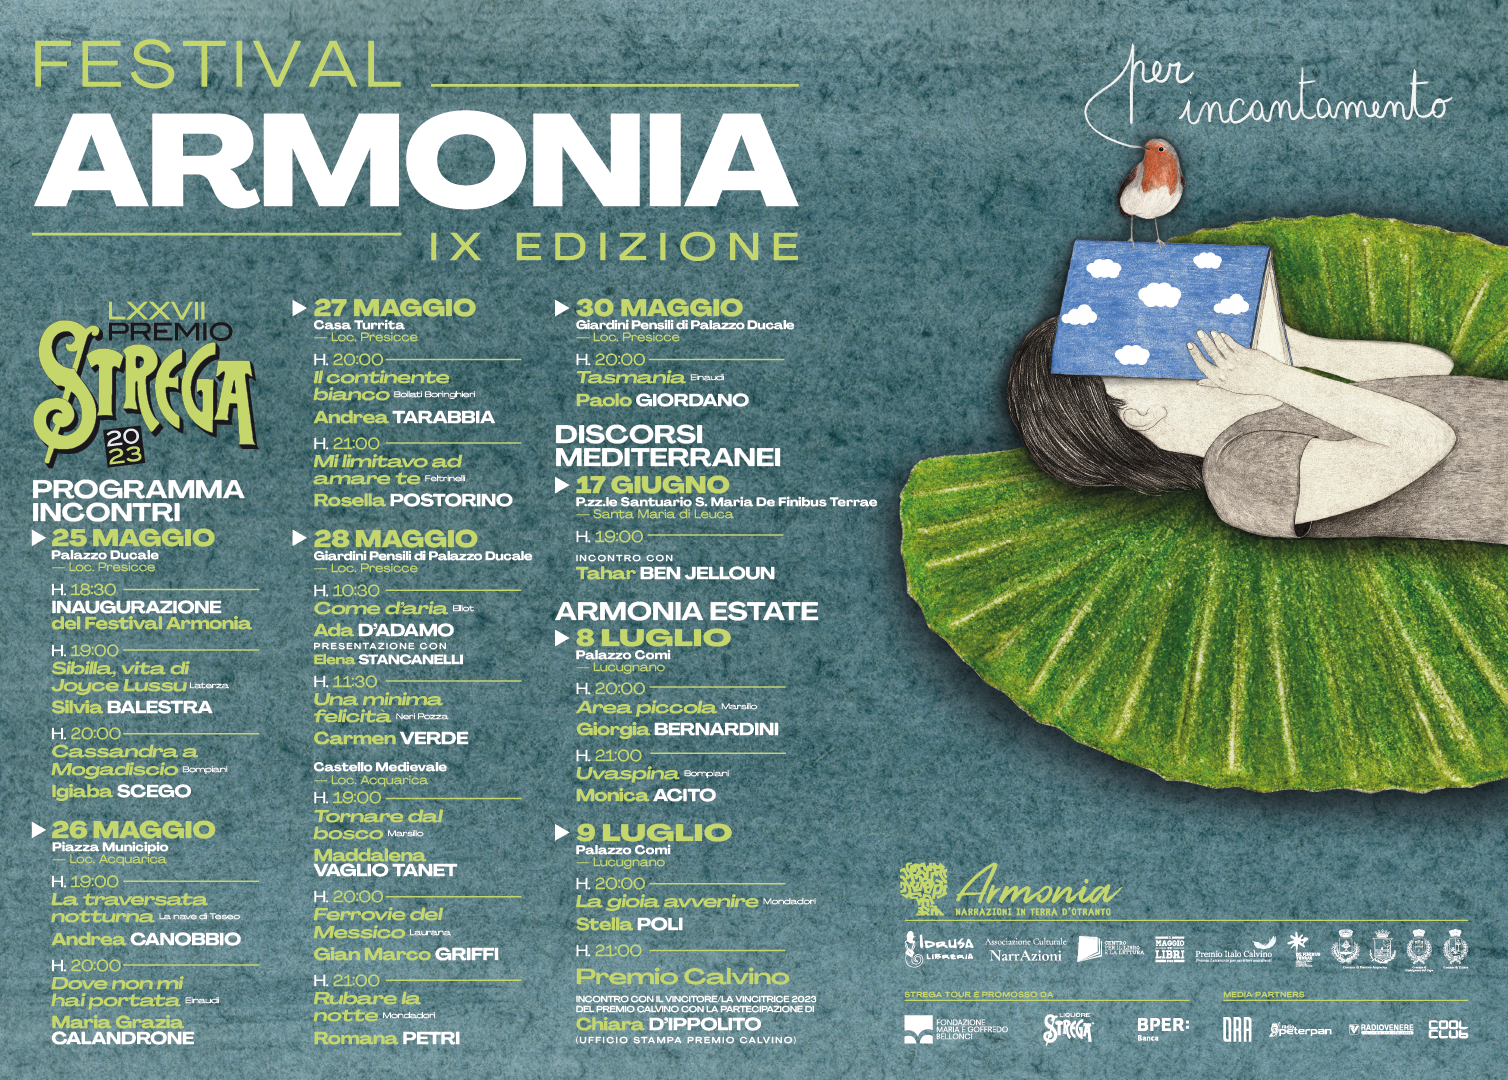 Festival Armonia - Programma completo